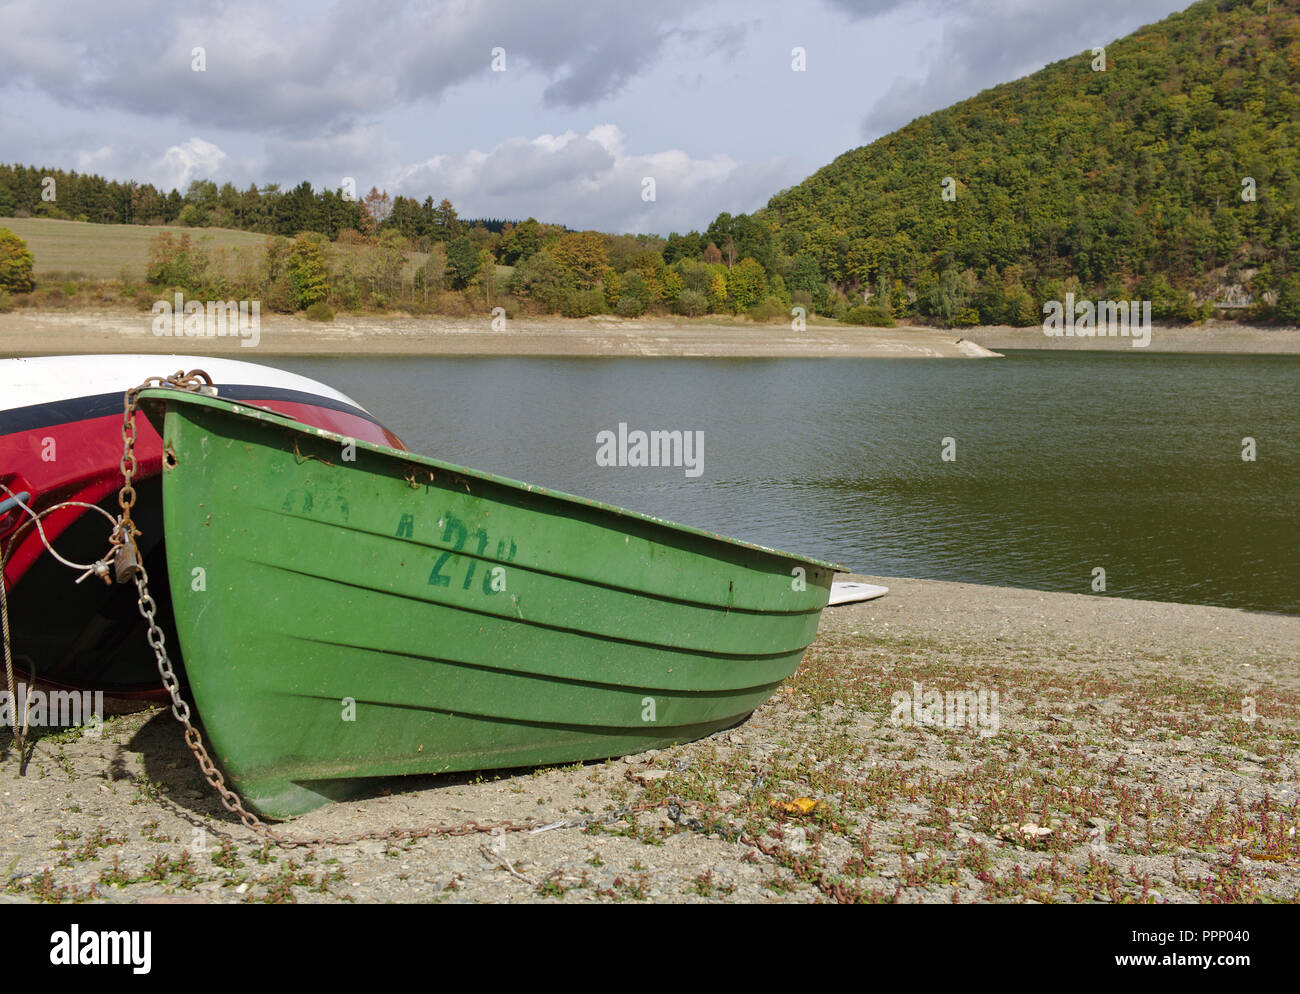 Diemelsee, Allemagne - lac avec plage de galets, les plages et les collines boisées de bateaux écologiques dans la distance Banque D'Images